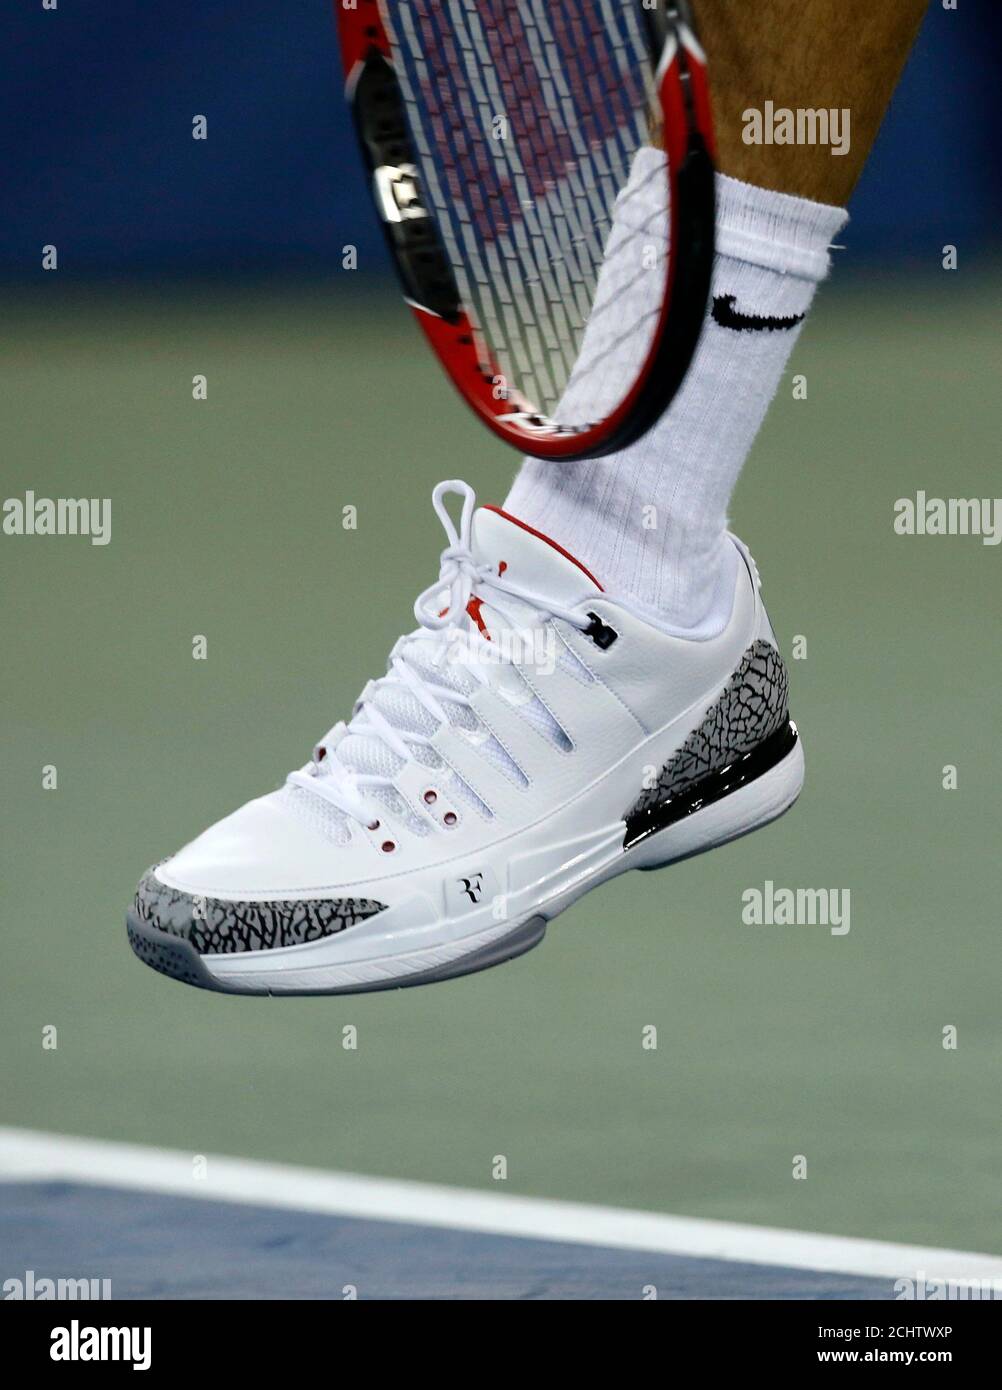 neumático Sofocar chorro Roger Federer de Suiza sirve mientras llevaba unas nuevas zapatillas, las  Nike Zoom vapor 9 Tour AJ3 ayudó a diseñar con el gran baloncesto Michael  Jordan, durante su partido de singles masculino